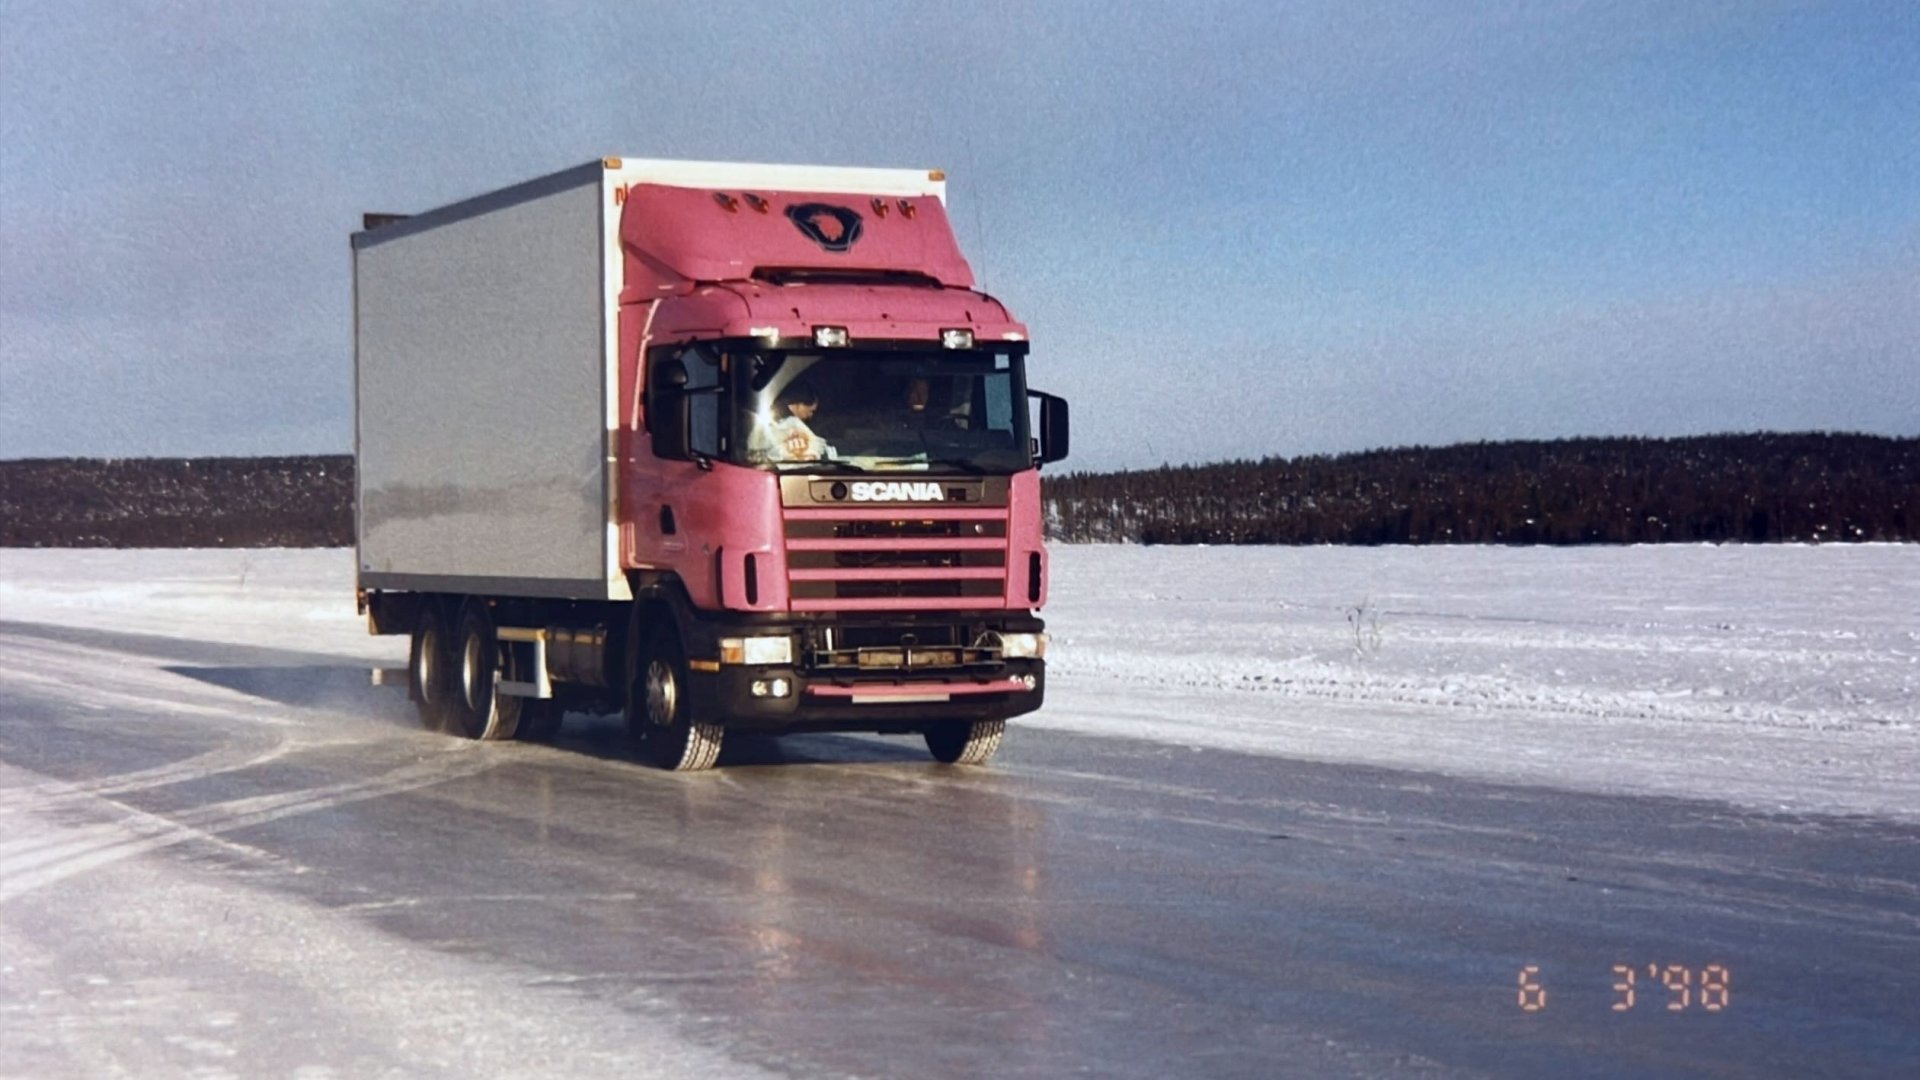 Norrland test 1998 Truck 16-9 1920w